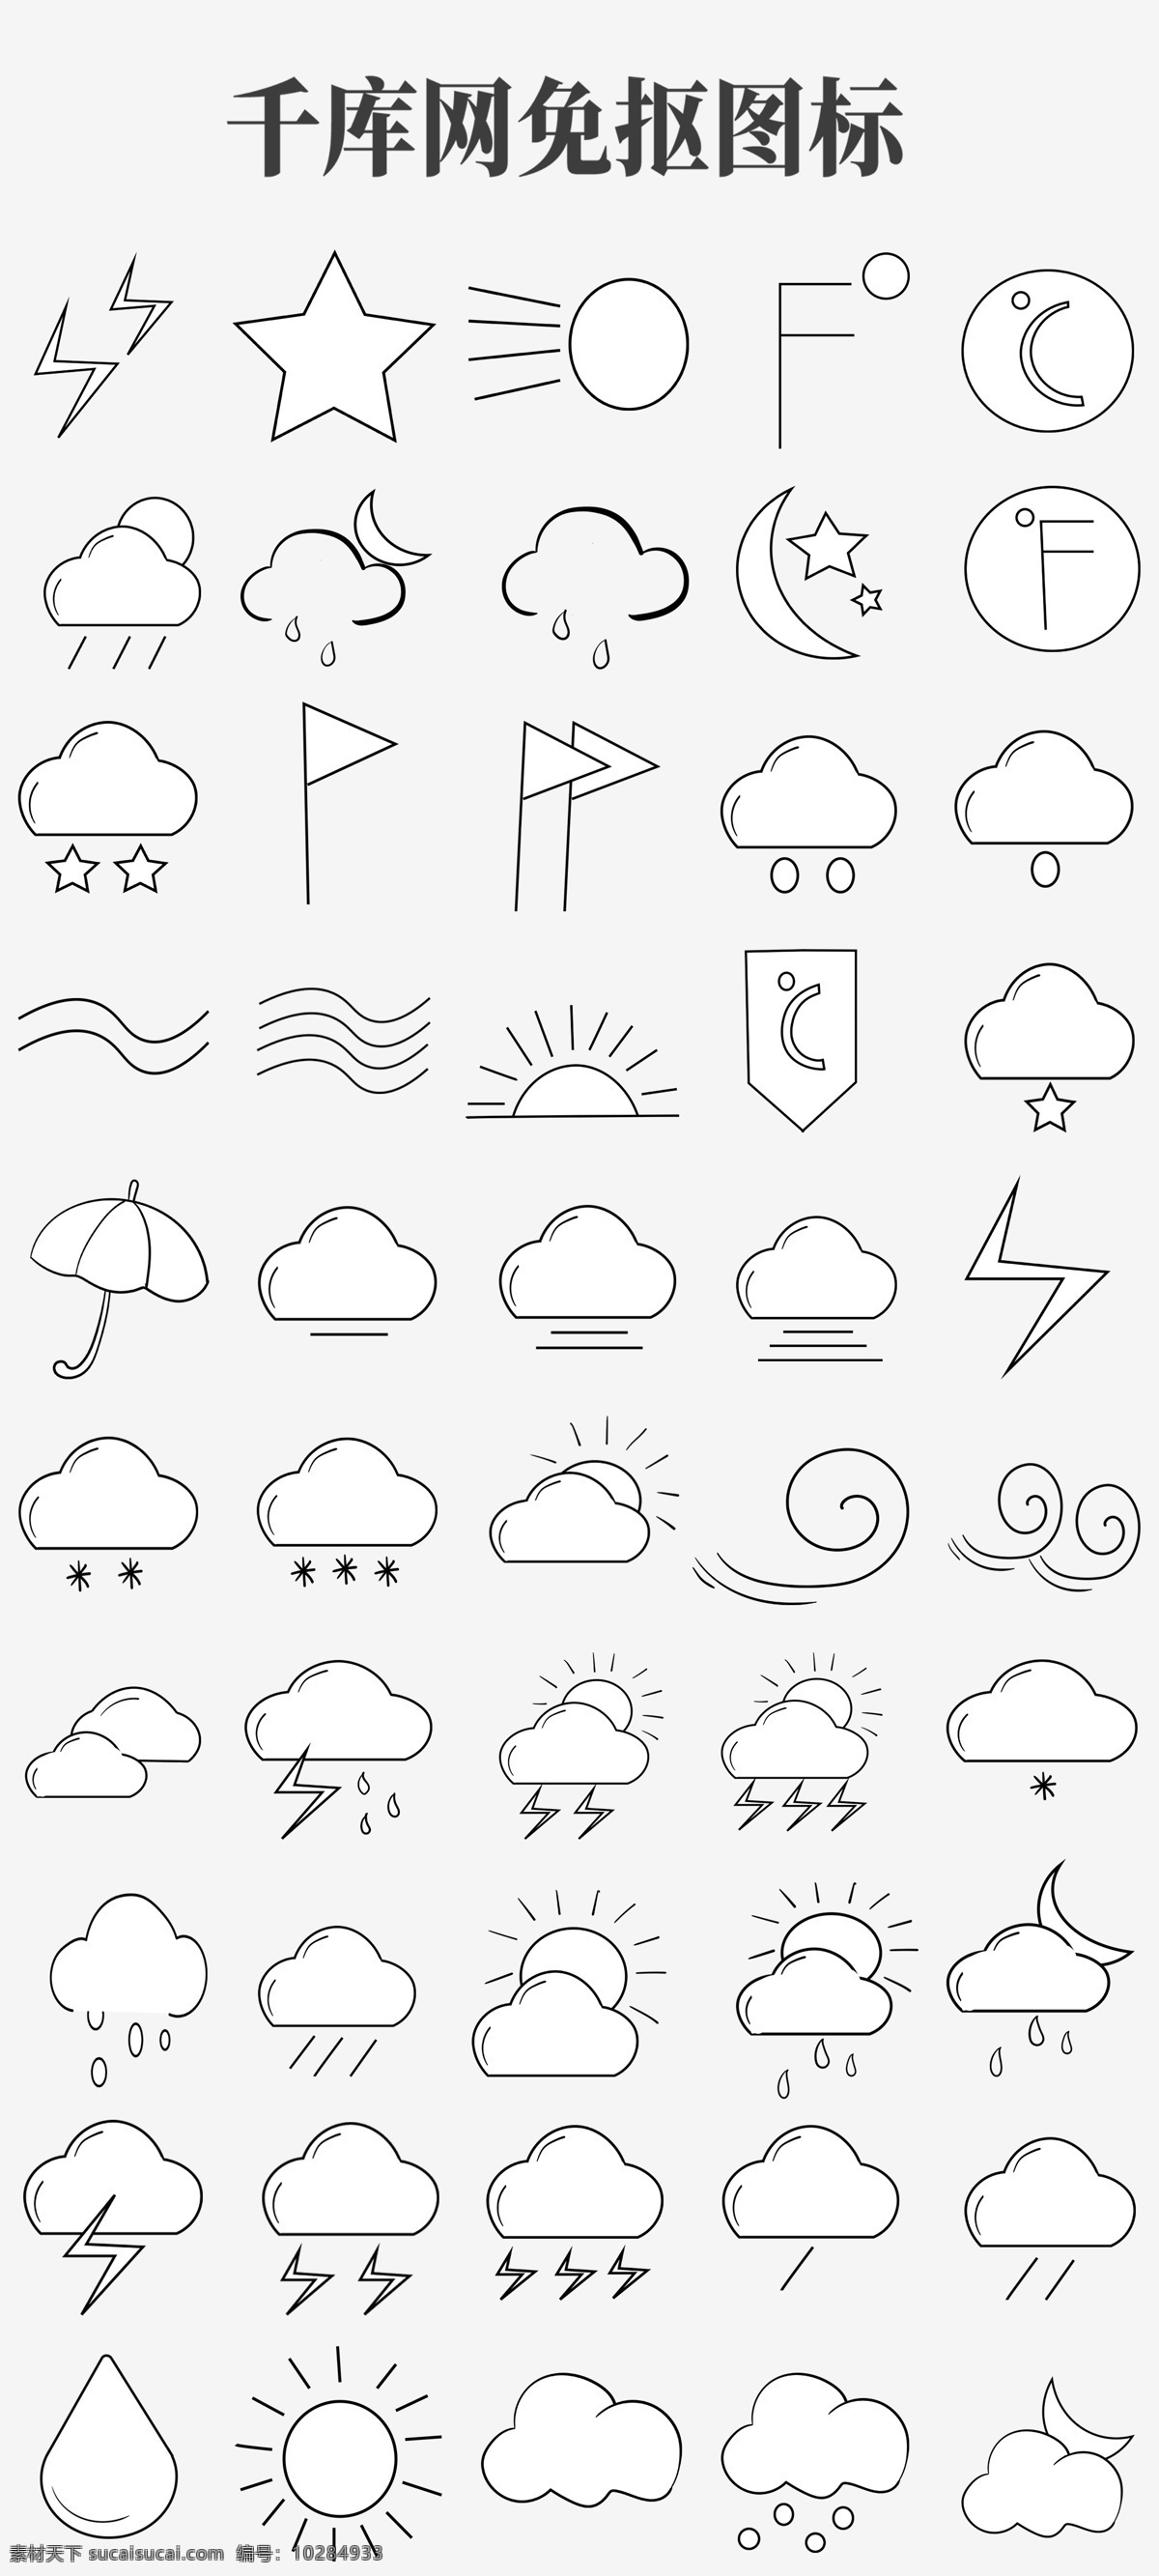 天气预报 图表 插画 卡通插画 设施插画 设备插画 云朵图标 星星图标 月亮的图标 天气的图标